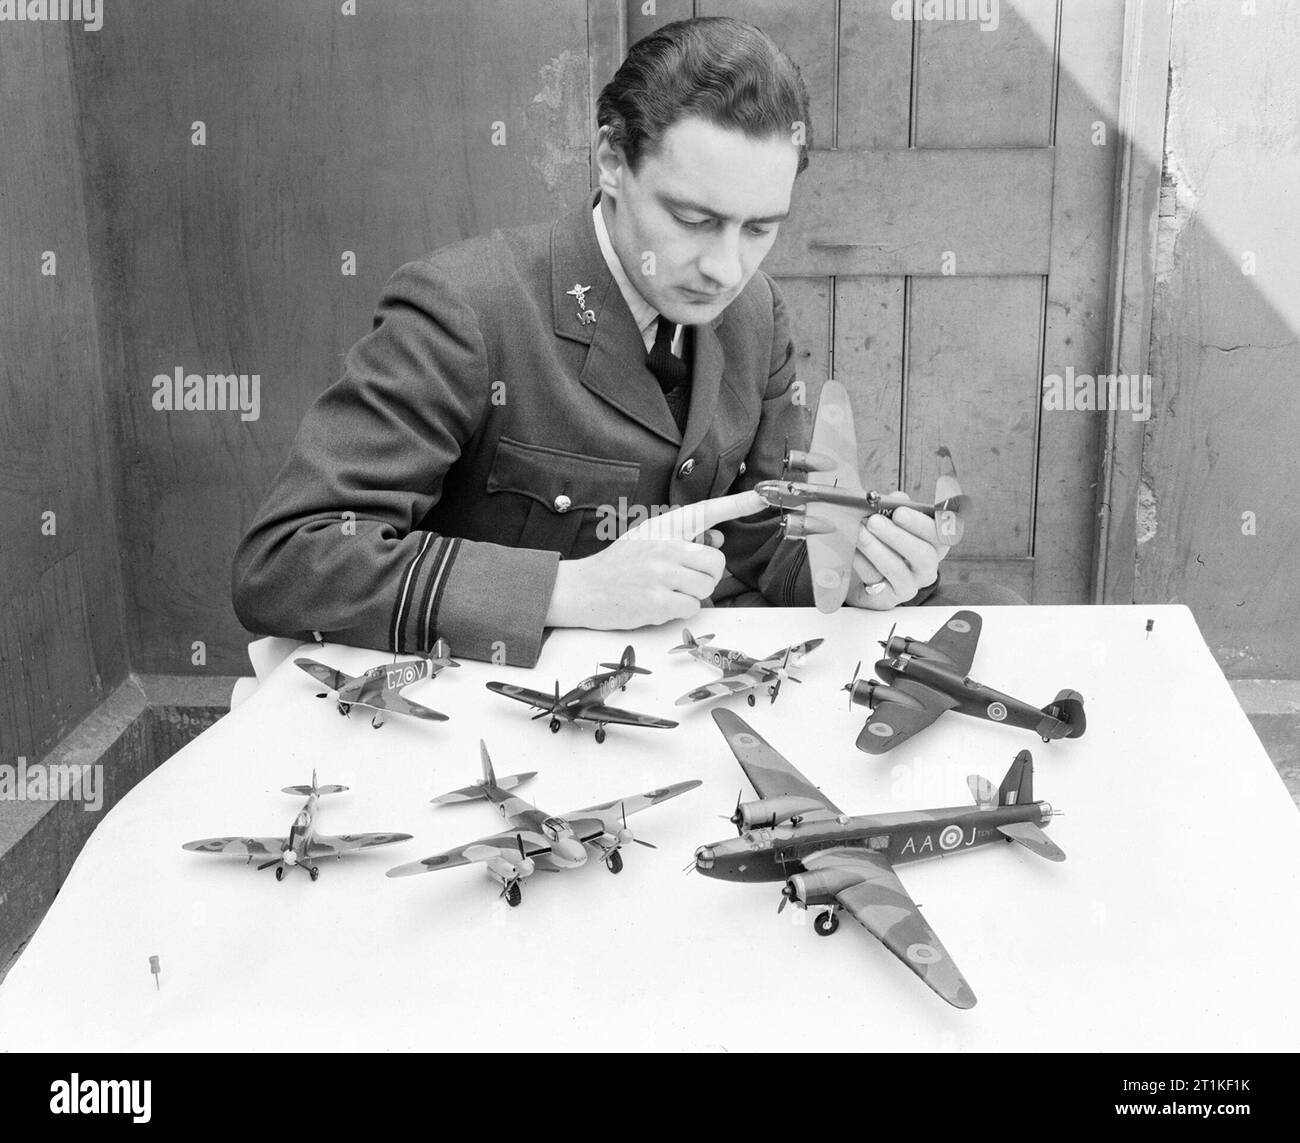 Flugleutnant J G Eadie, medizinischer Offizier am RAF No. 11 Group Headquarter in Uxbridge, fotografiert mit einem Teil seiner Sammlung von Modellflugzeugen, 16. April 1943. Stockfoto